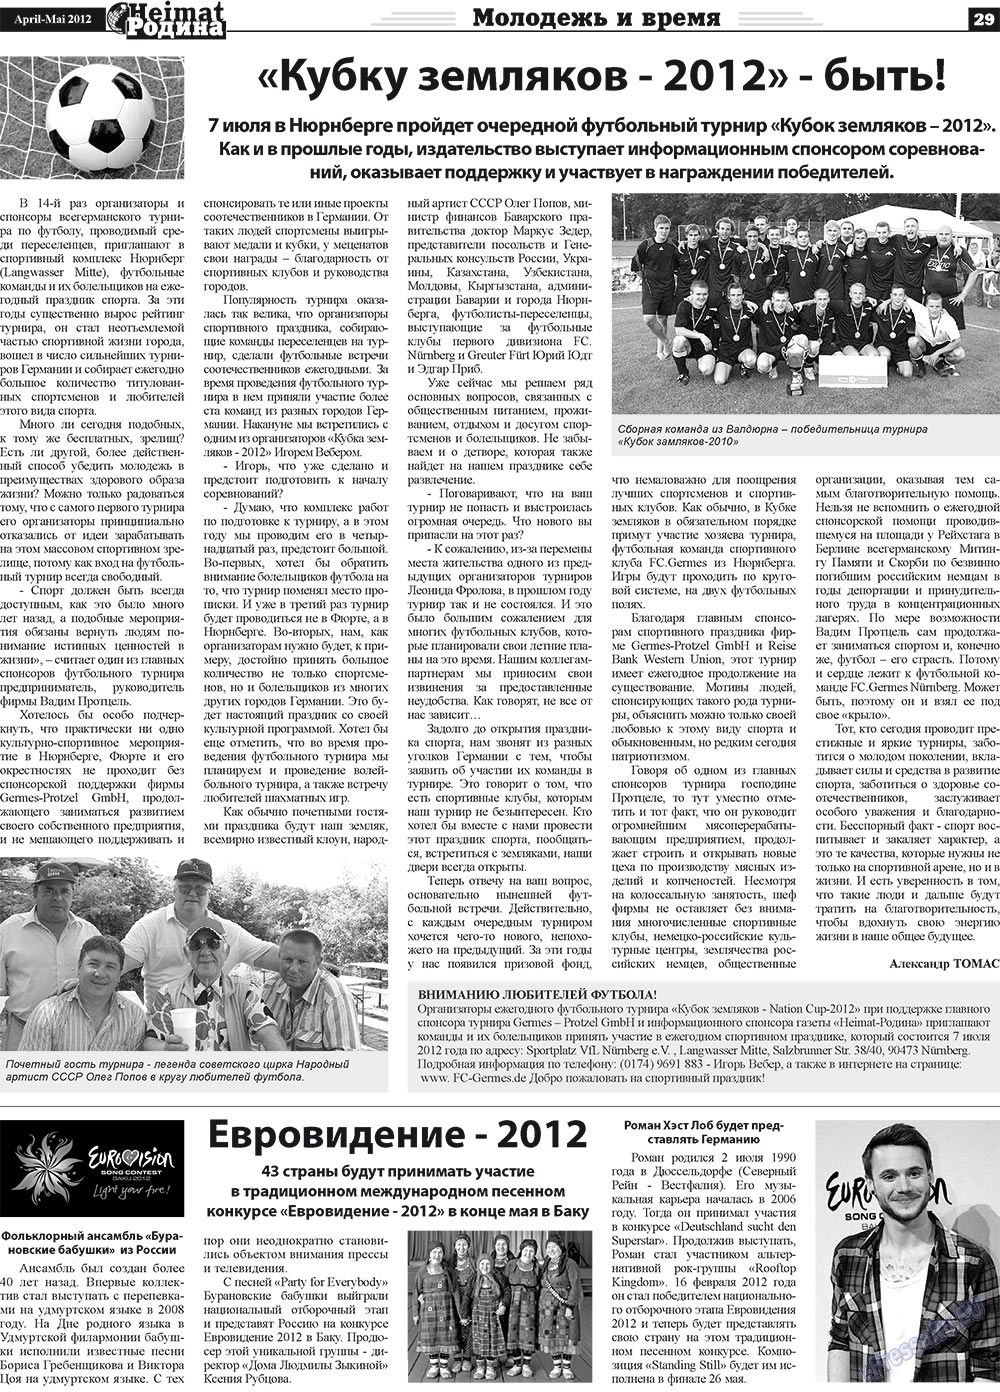 Heimat-Родина (газета). 2012 год, номер 4, стр. 29